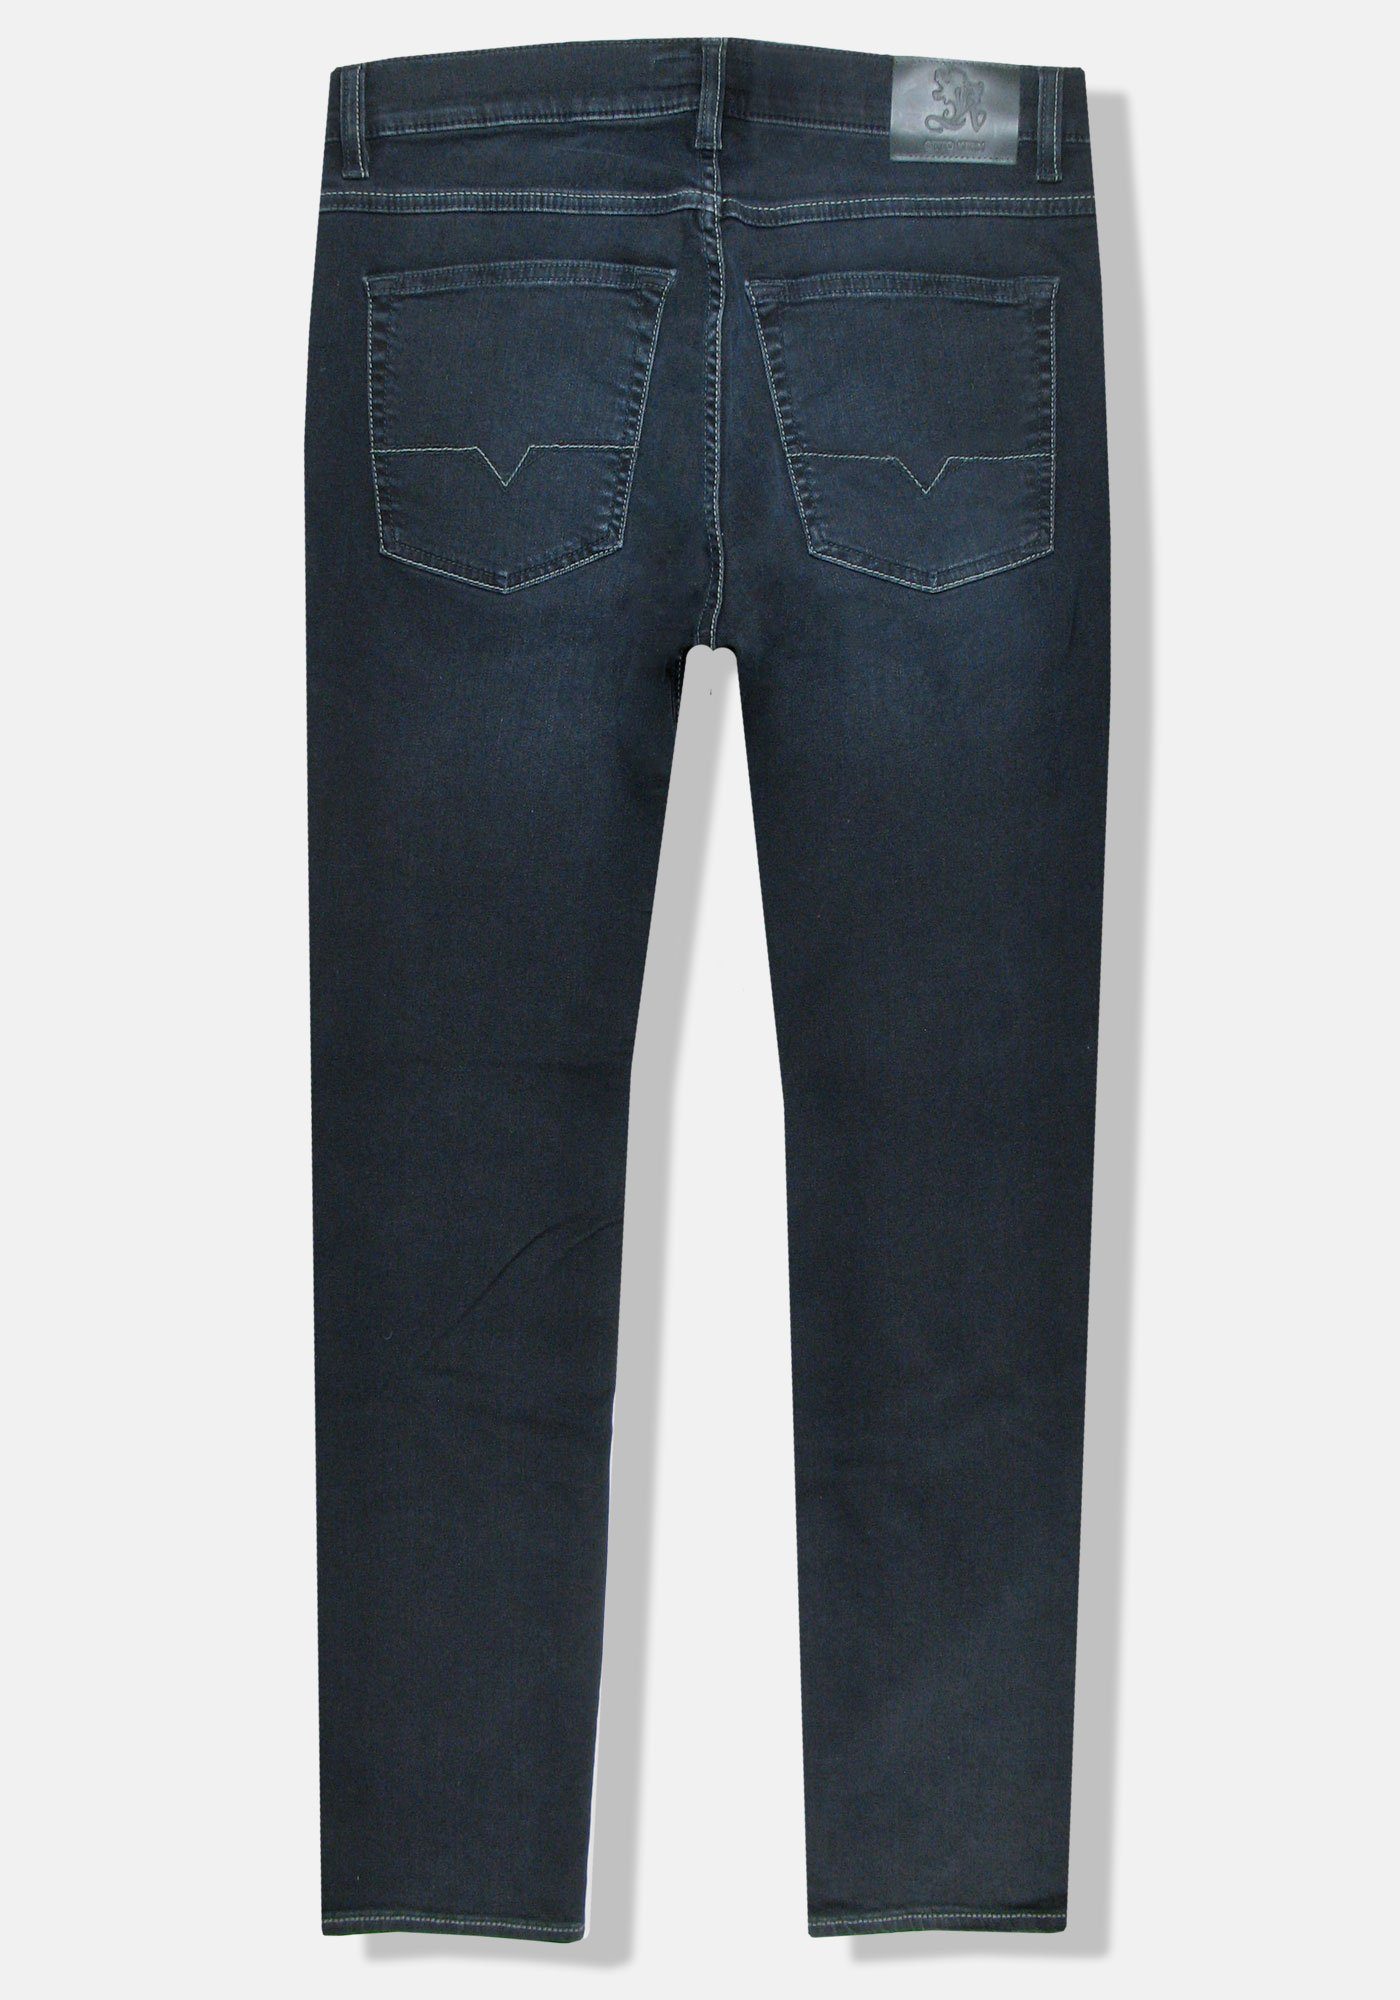 Kern Flex Blue John Night 5-Pocket-Jeans Denim Otto Pure Kern